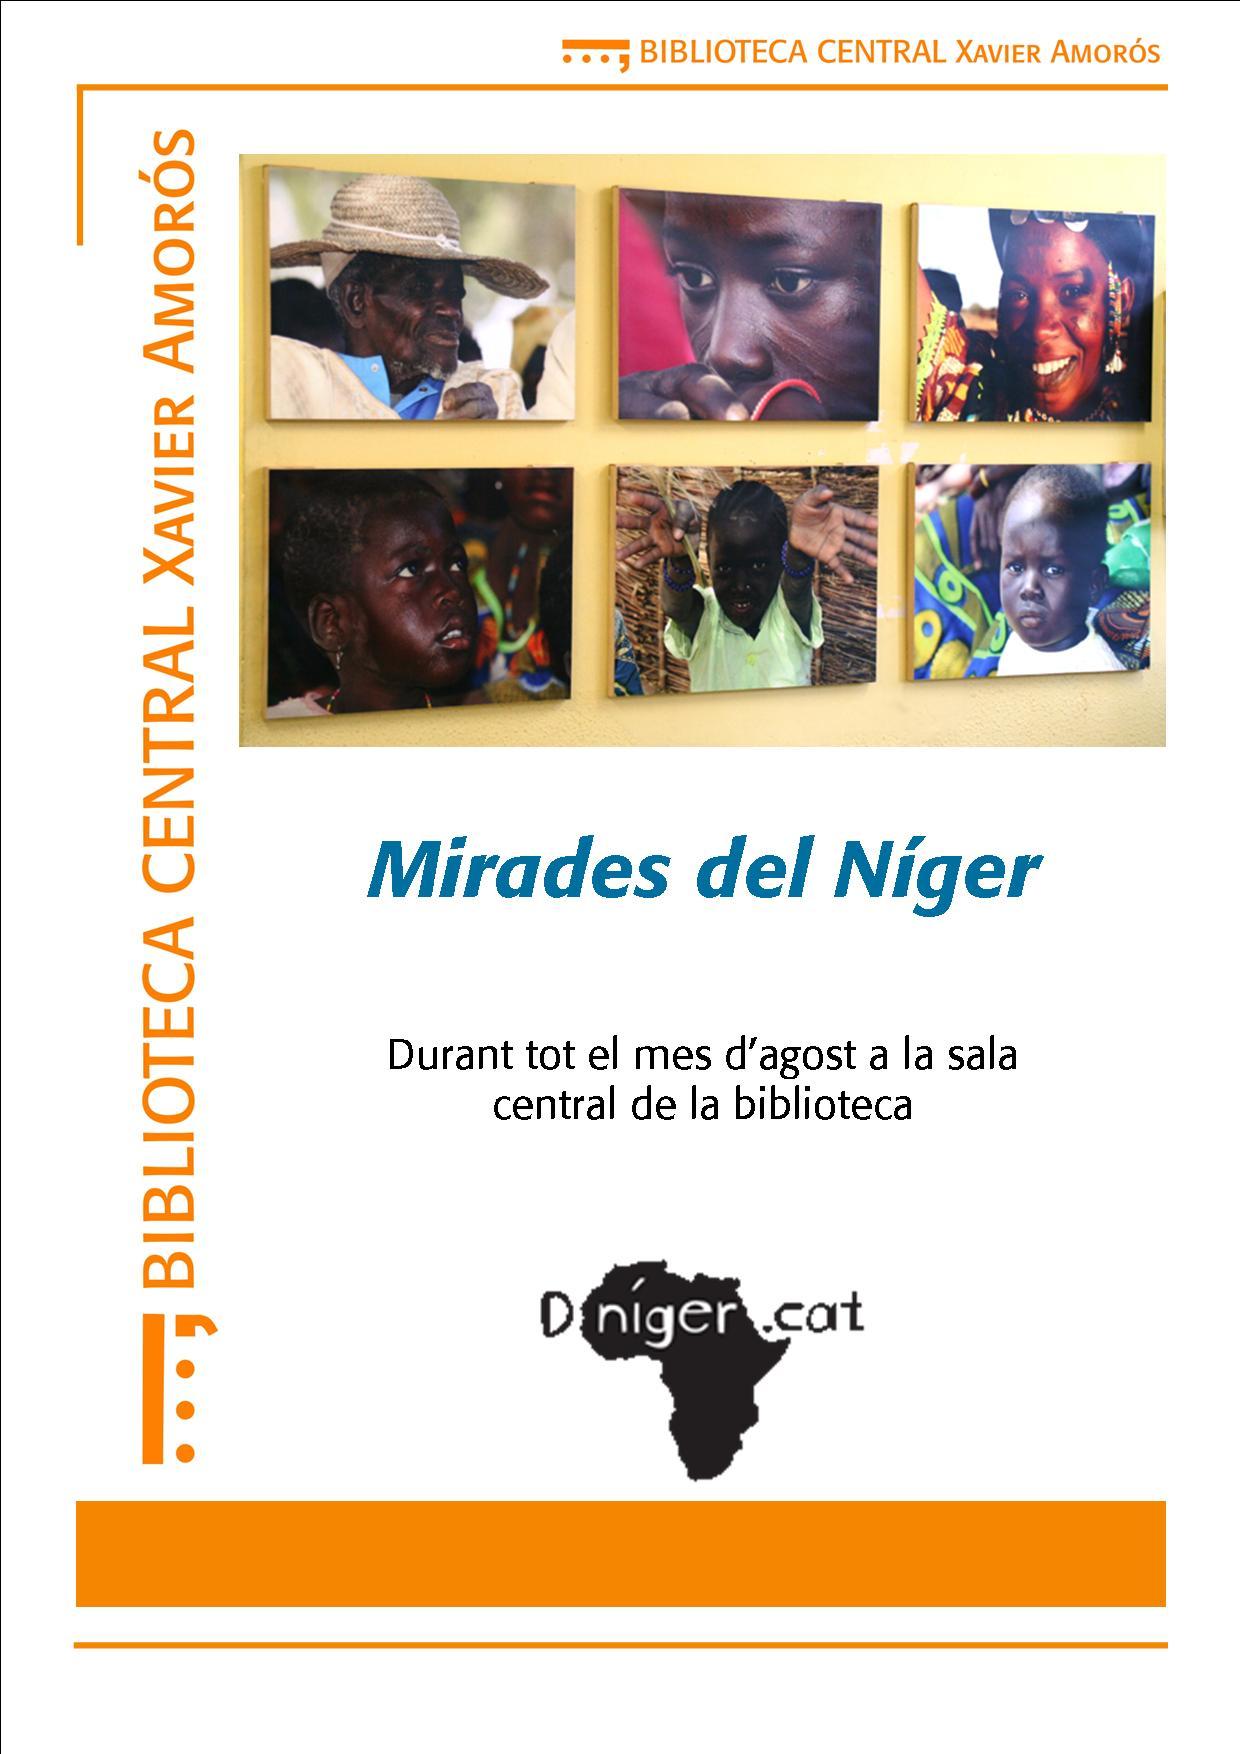 Exposició Mirades del Níger